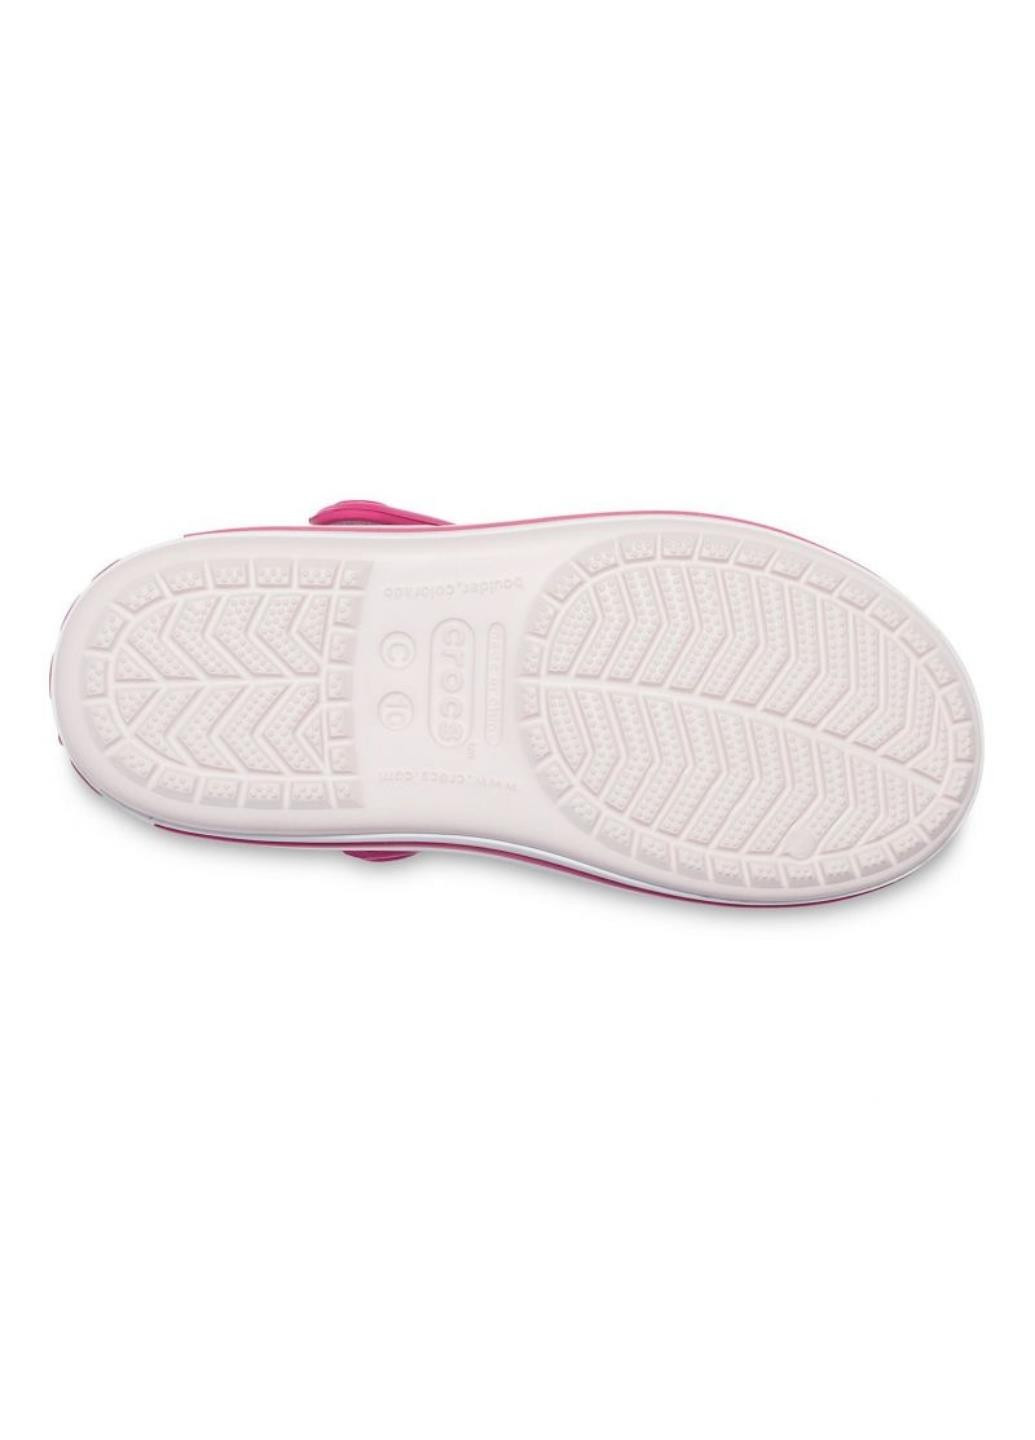 Крокс Дитячі Crocband Sandal Crocs Sandal Kids напис світло-рожева спортивна